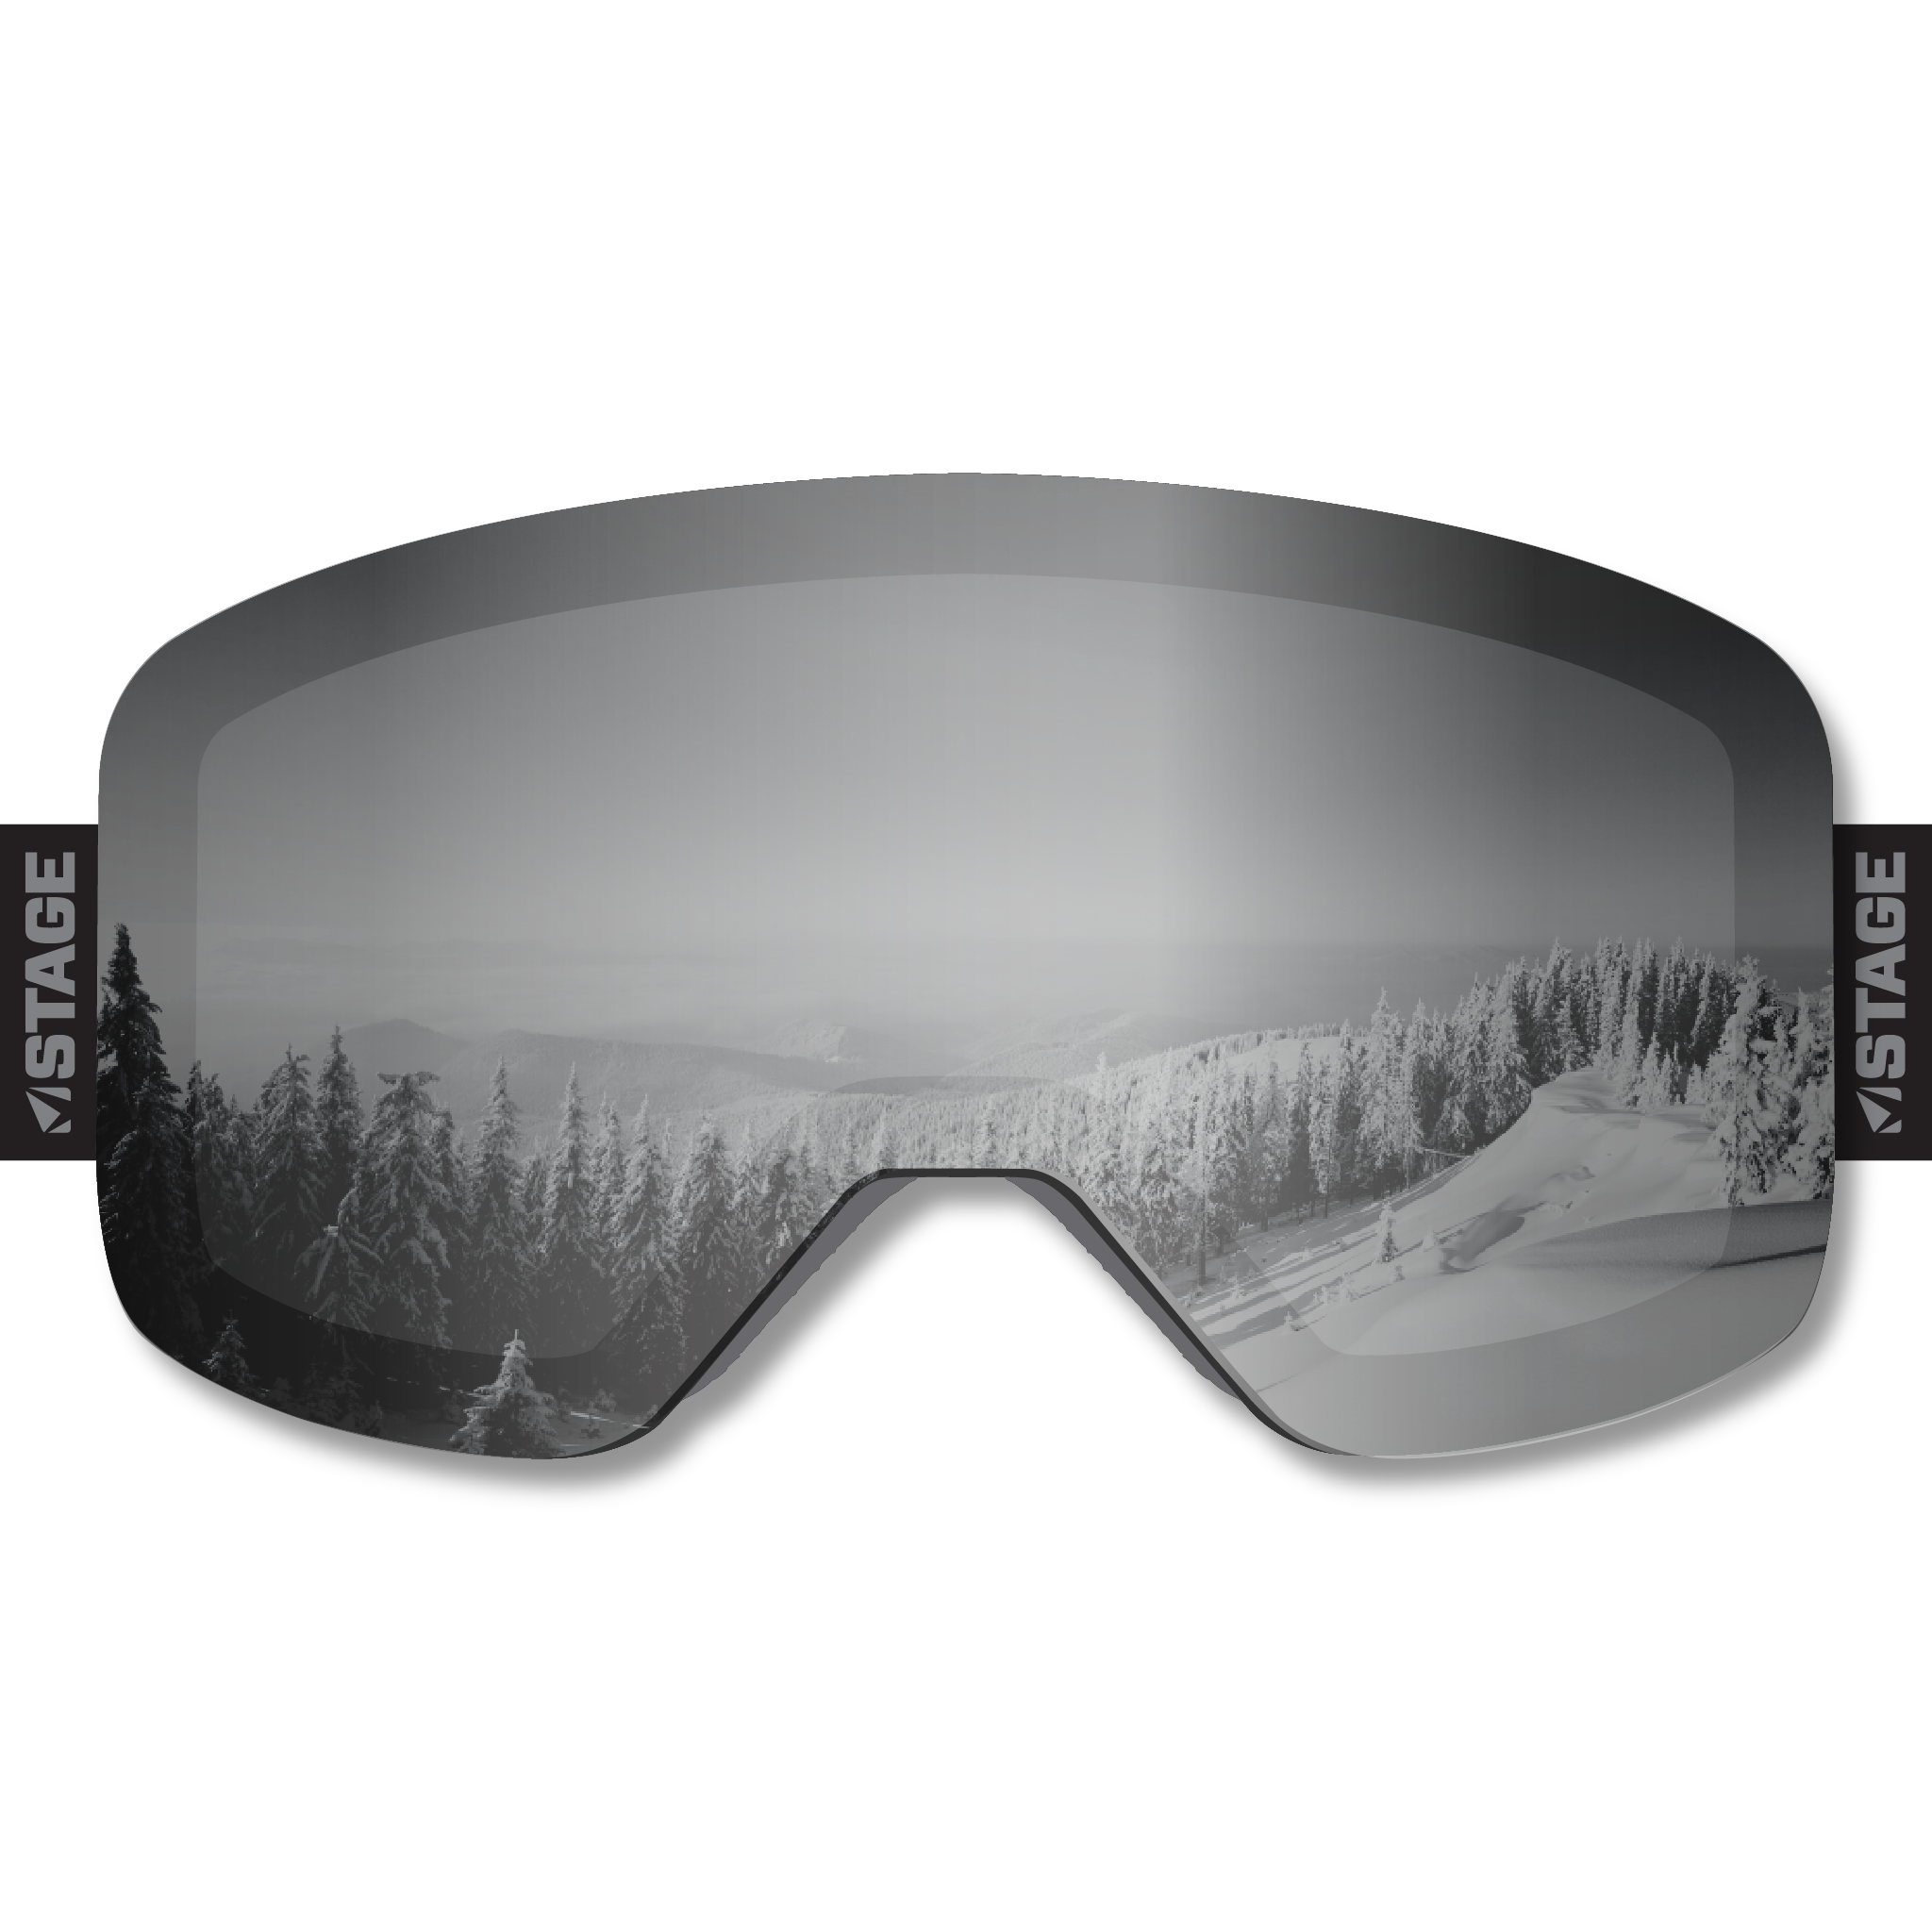 Arise & Ski Frameless Prop Ski Goggle - Mirror Chrome Smoke Lens